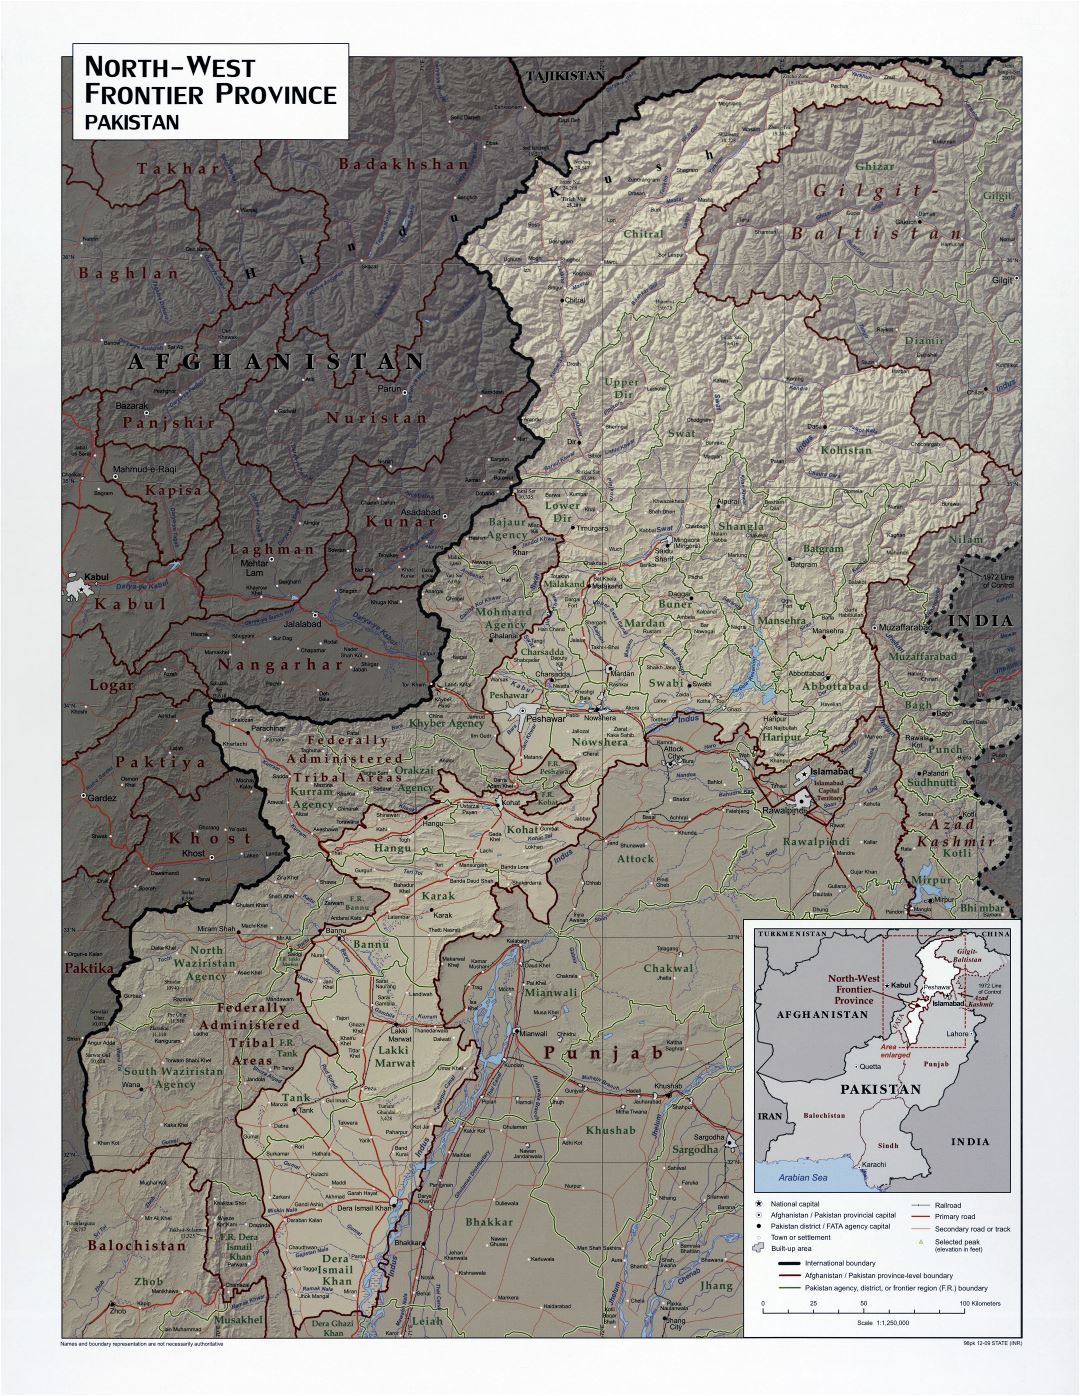 A gran escala detallado mapa de la provincia de la frontera noroeste de Pakistán con relieve, carreteras, ferrocarriles y ciudades - 2009